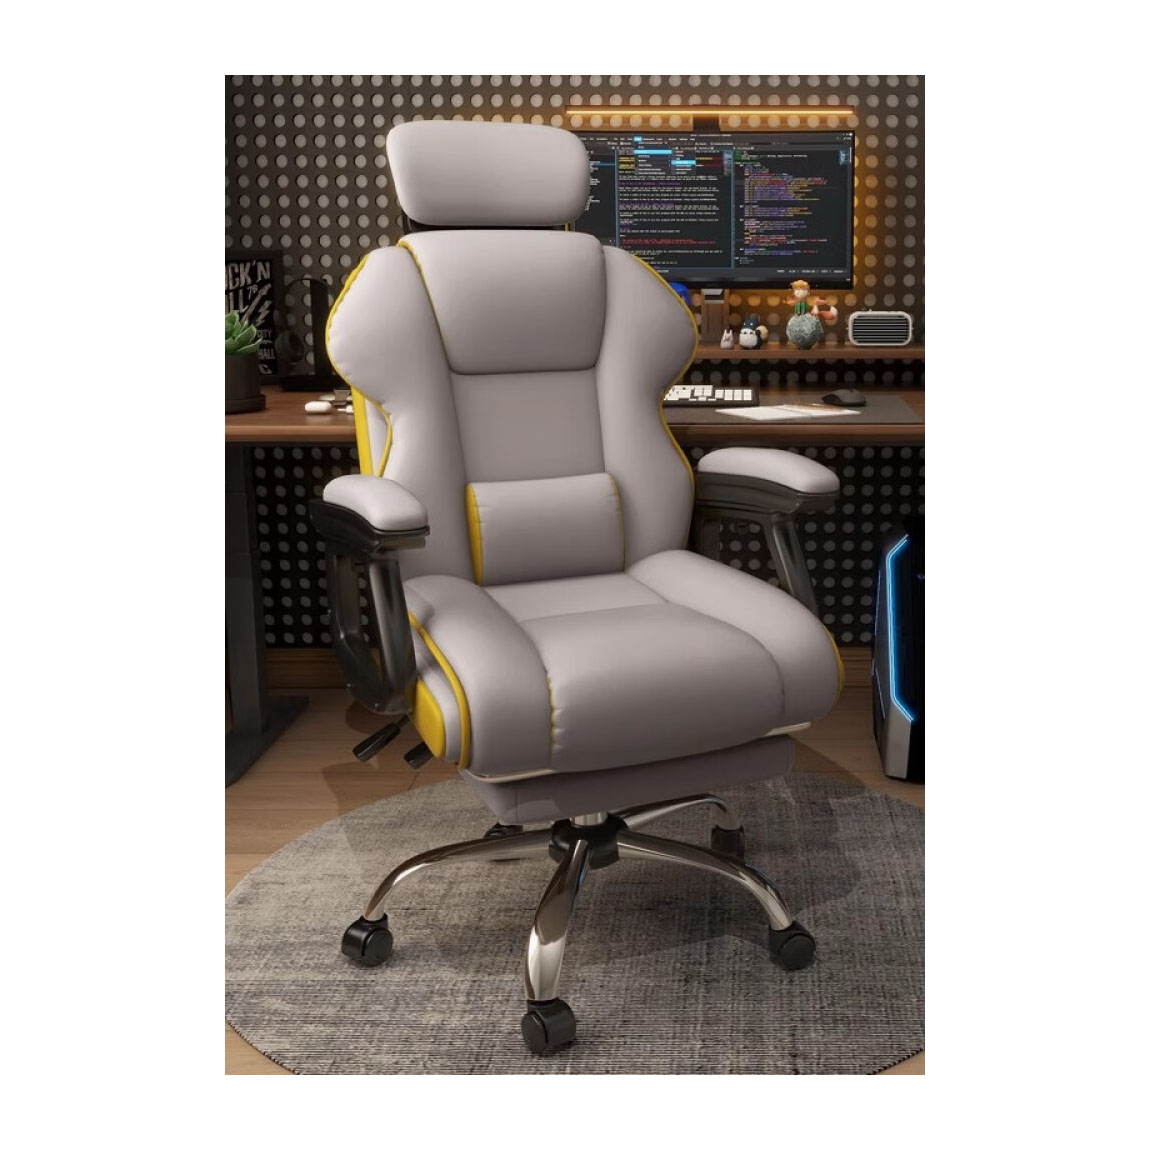 Игровое кресло Insdea WYB004, сталь, газлифт 3 lvl, с подставкой для ног, серый